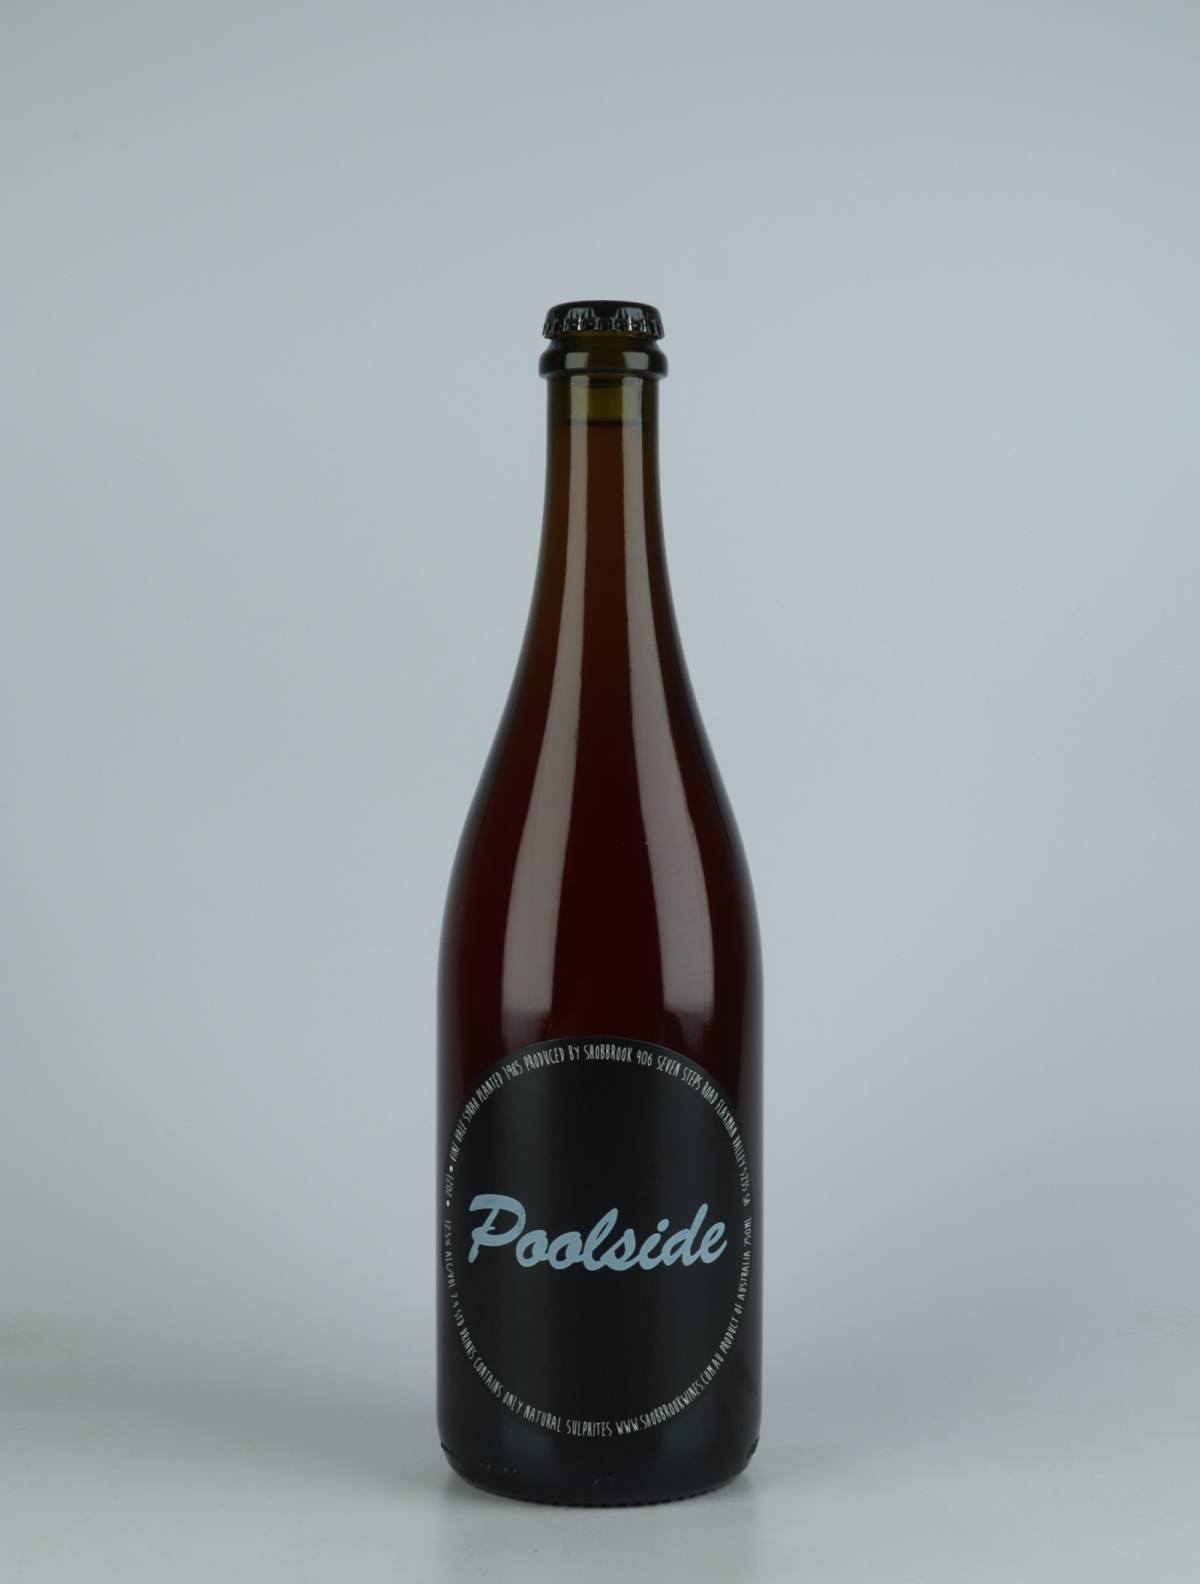 En flaske 2021 Poolside Rosé fra Tom Shobbrook, Barossa Valley i Australien